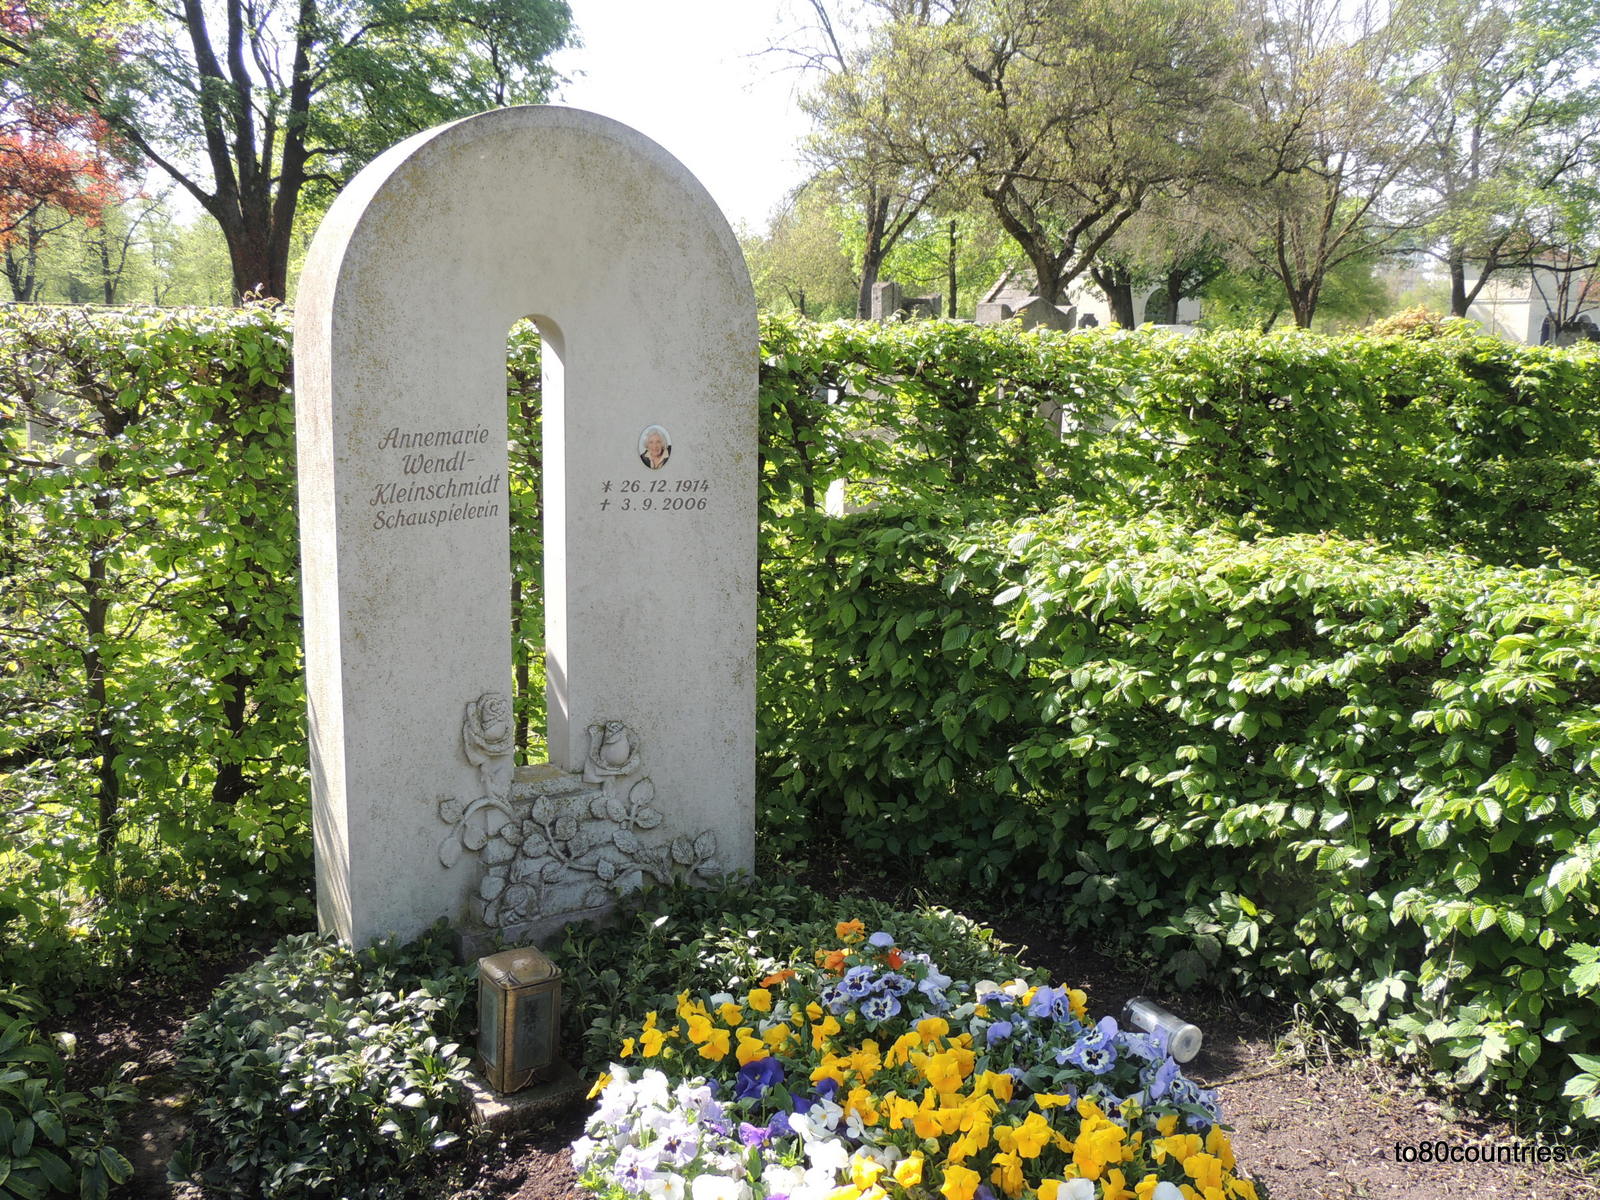 Prominentengräber: Annemarie Wendl - Nordfriedhof München